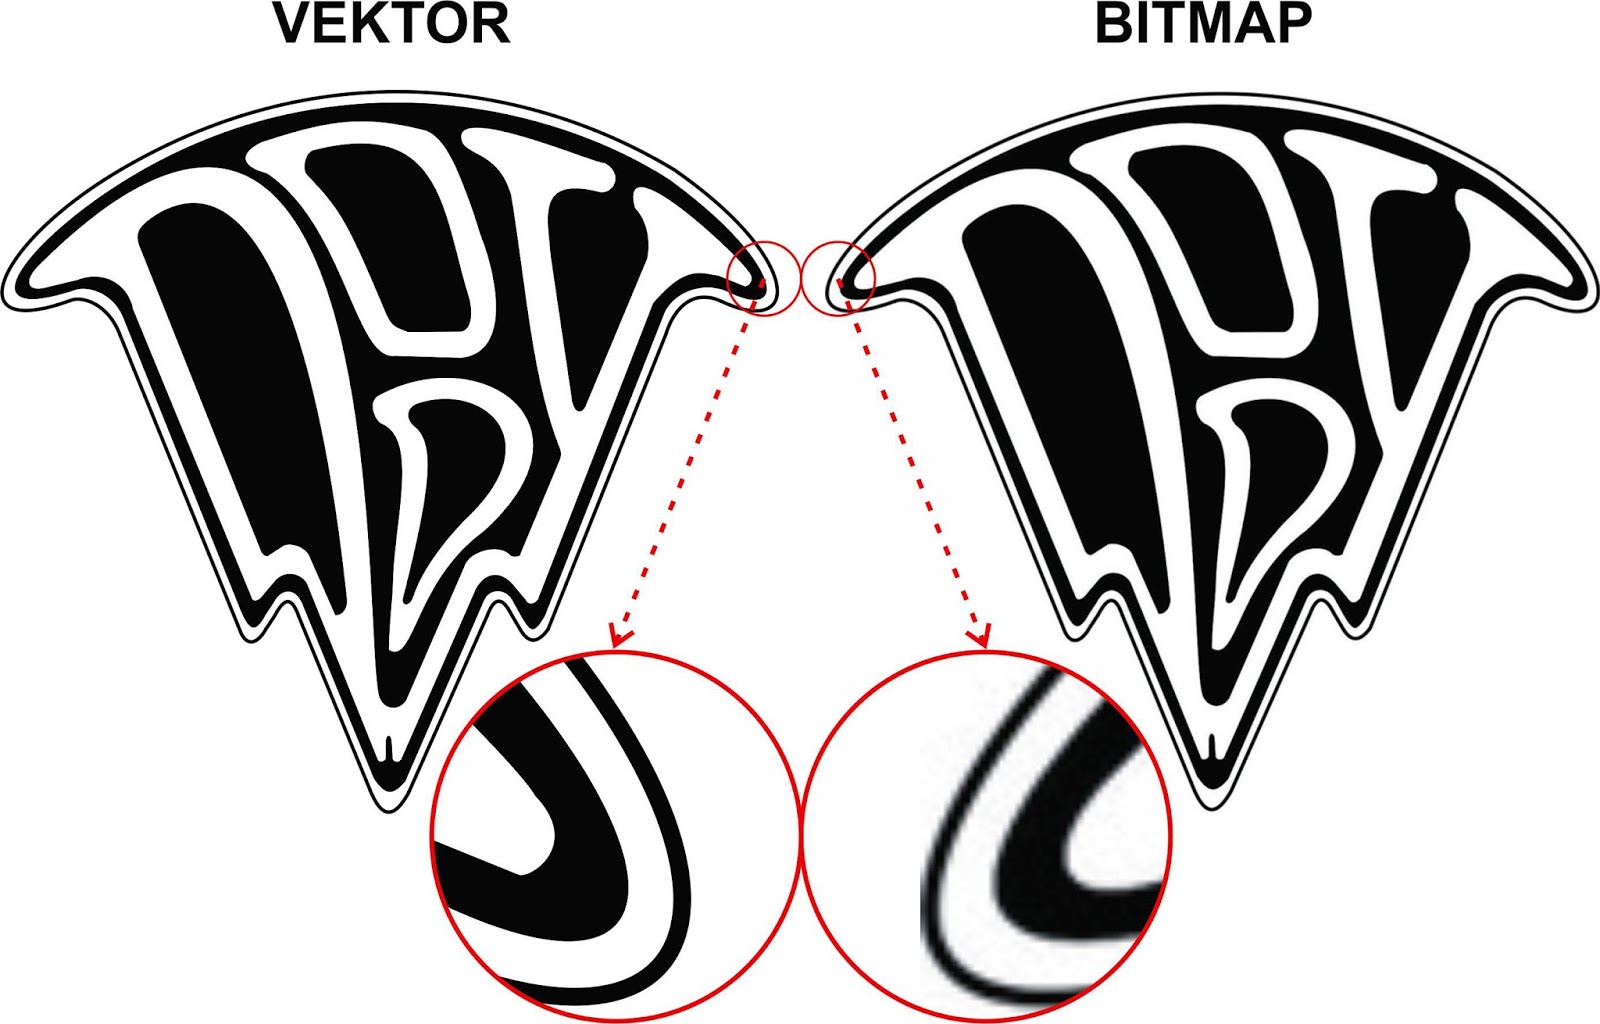 Bitmap Dan Vektor Dalam Desain Grafis Konsep Desain Grafis